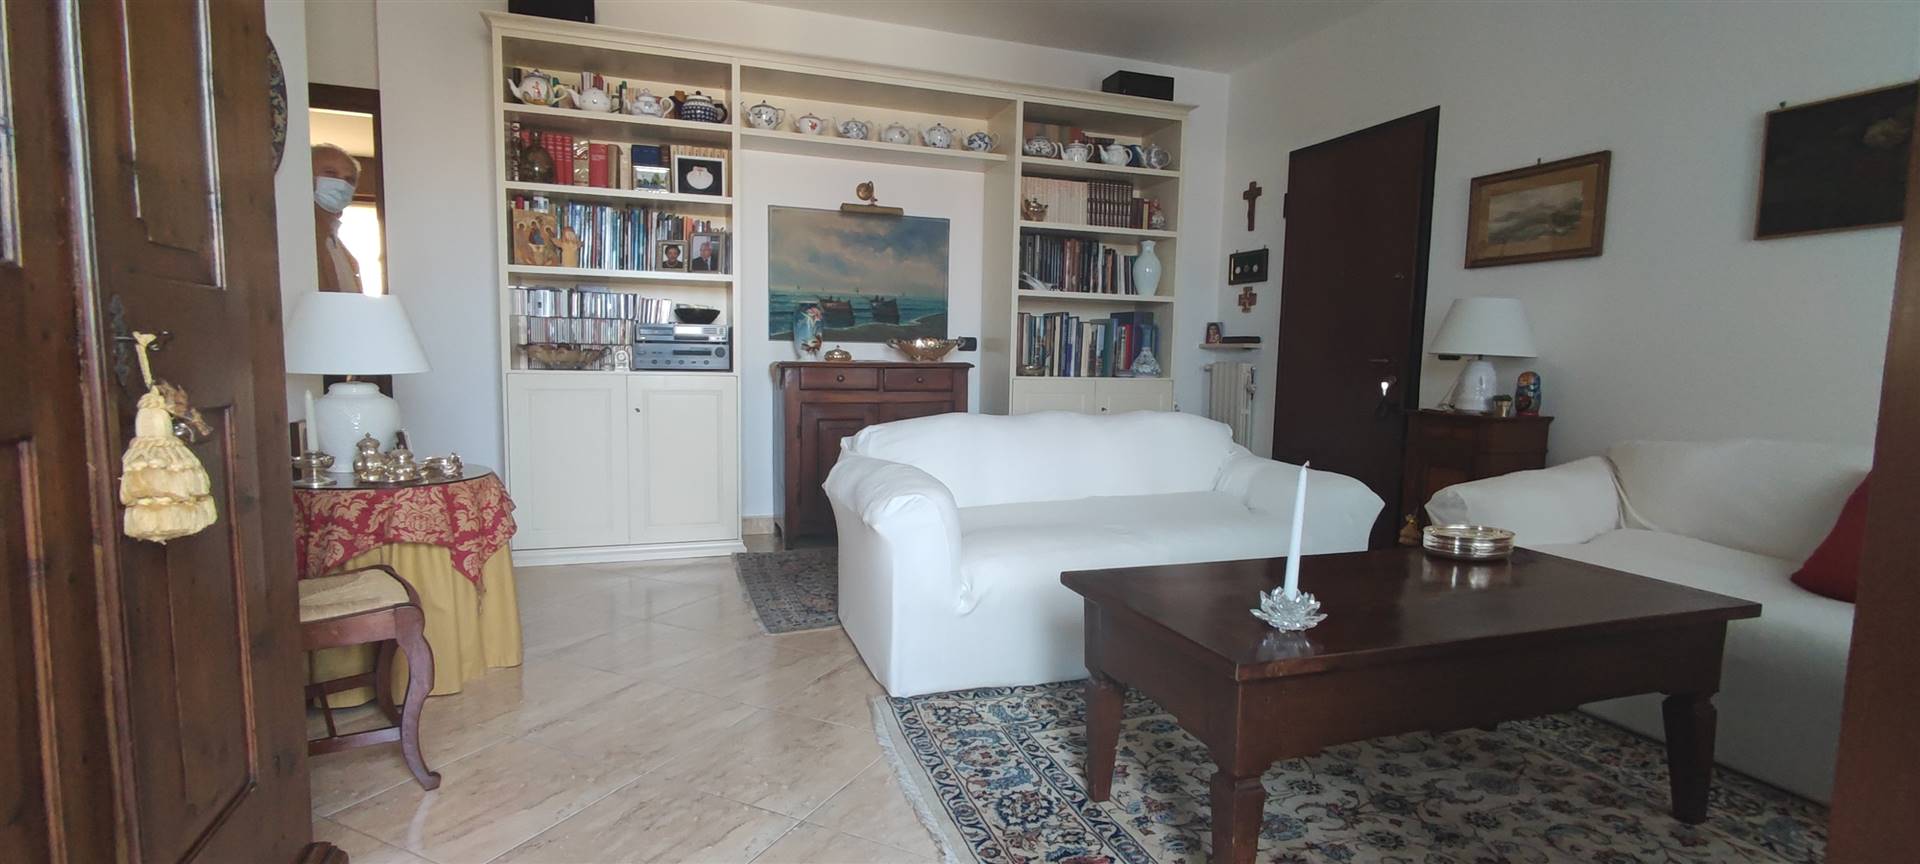 Appartamento in vendita a Borgonovo Val Tidone, 6 locali, prezzo € 169.000 | CambioCasa.it